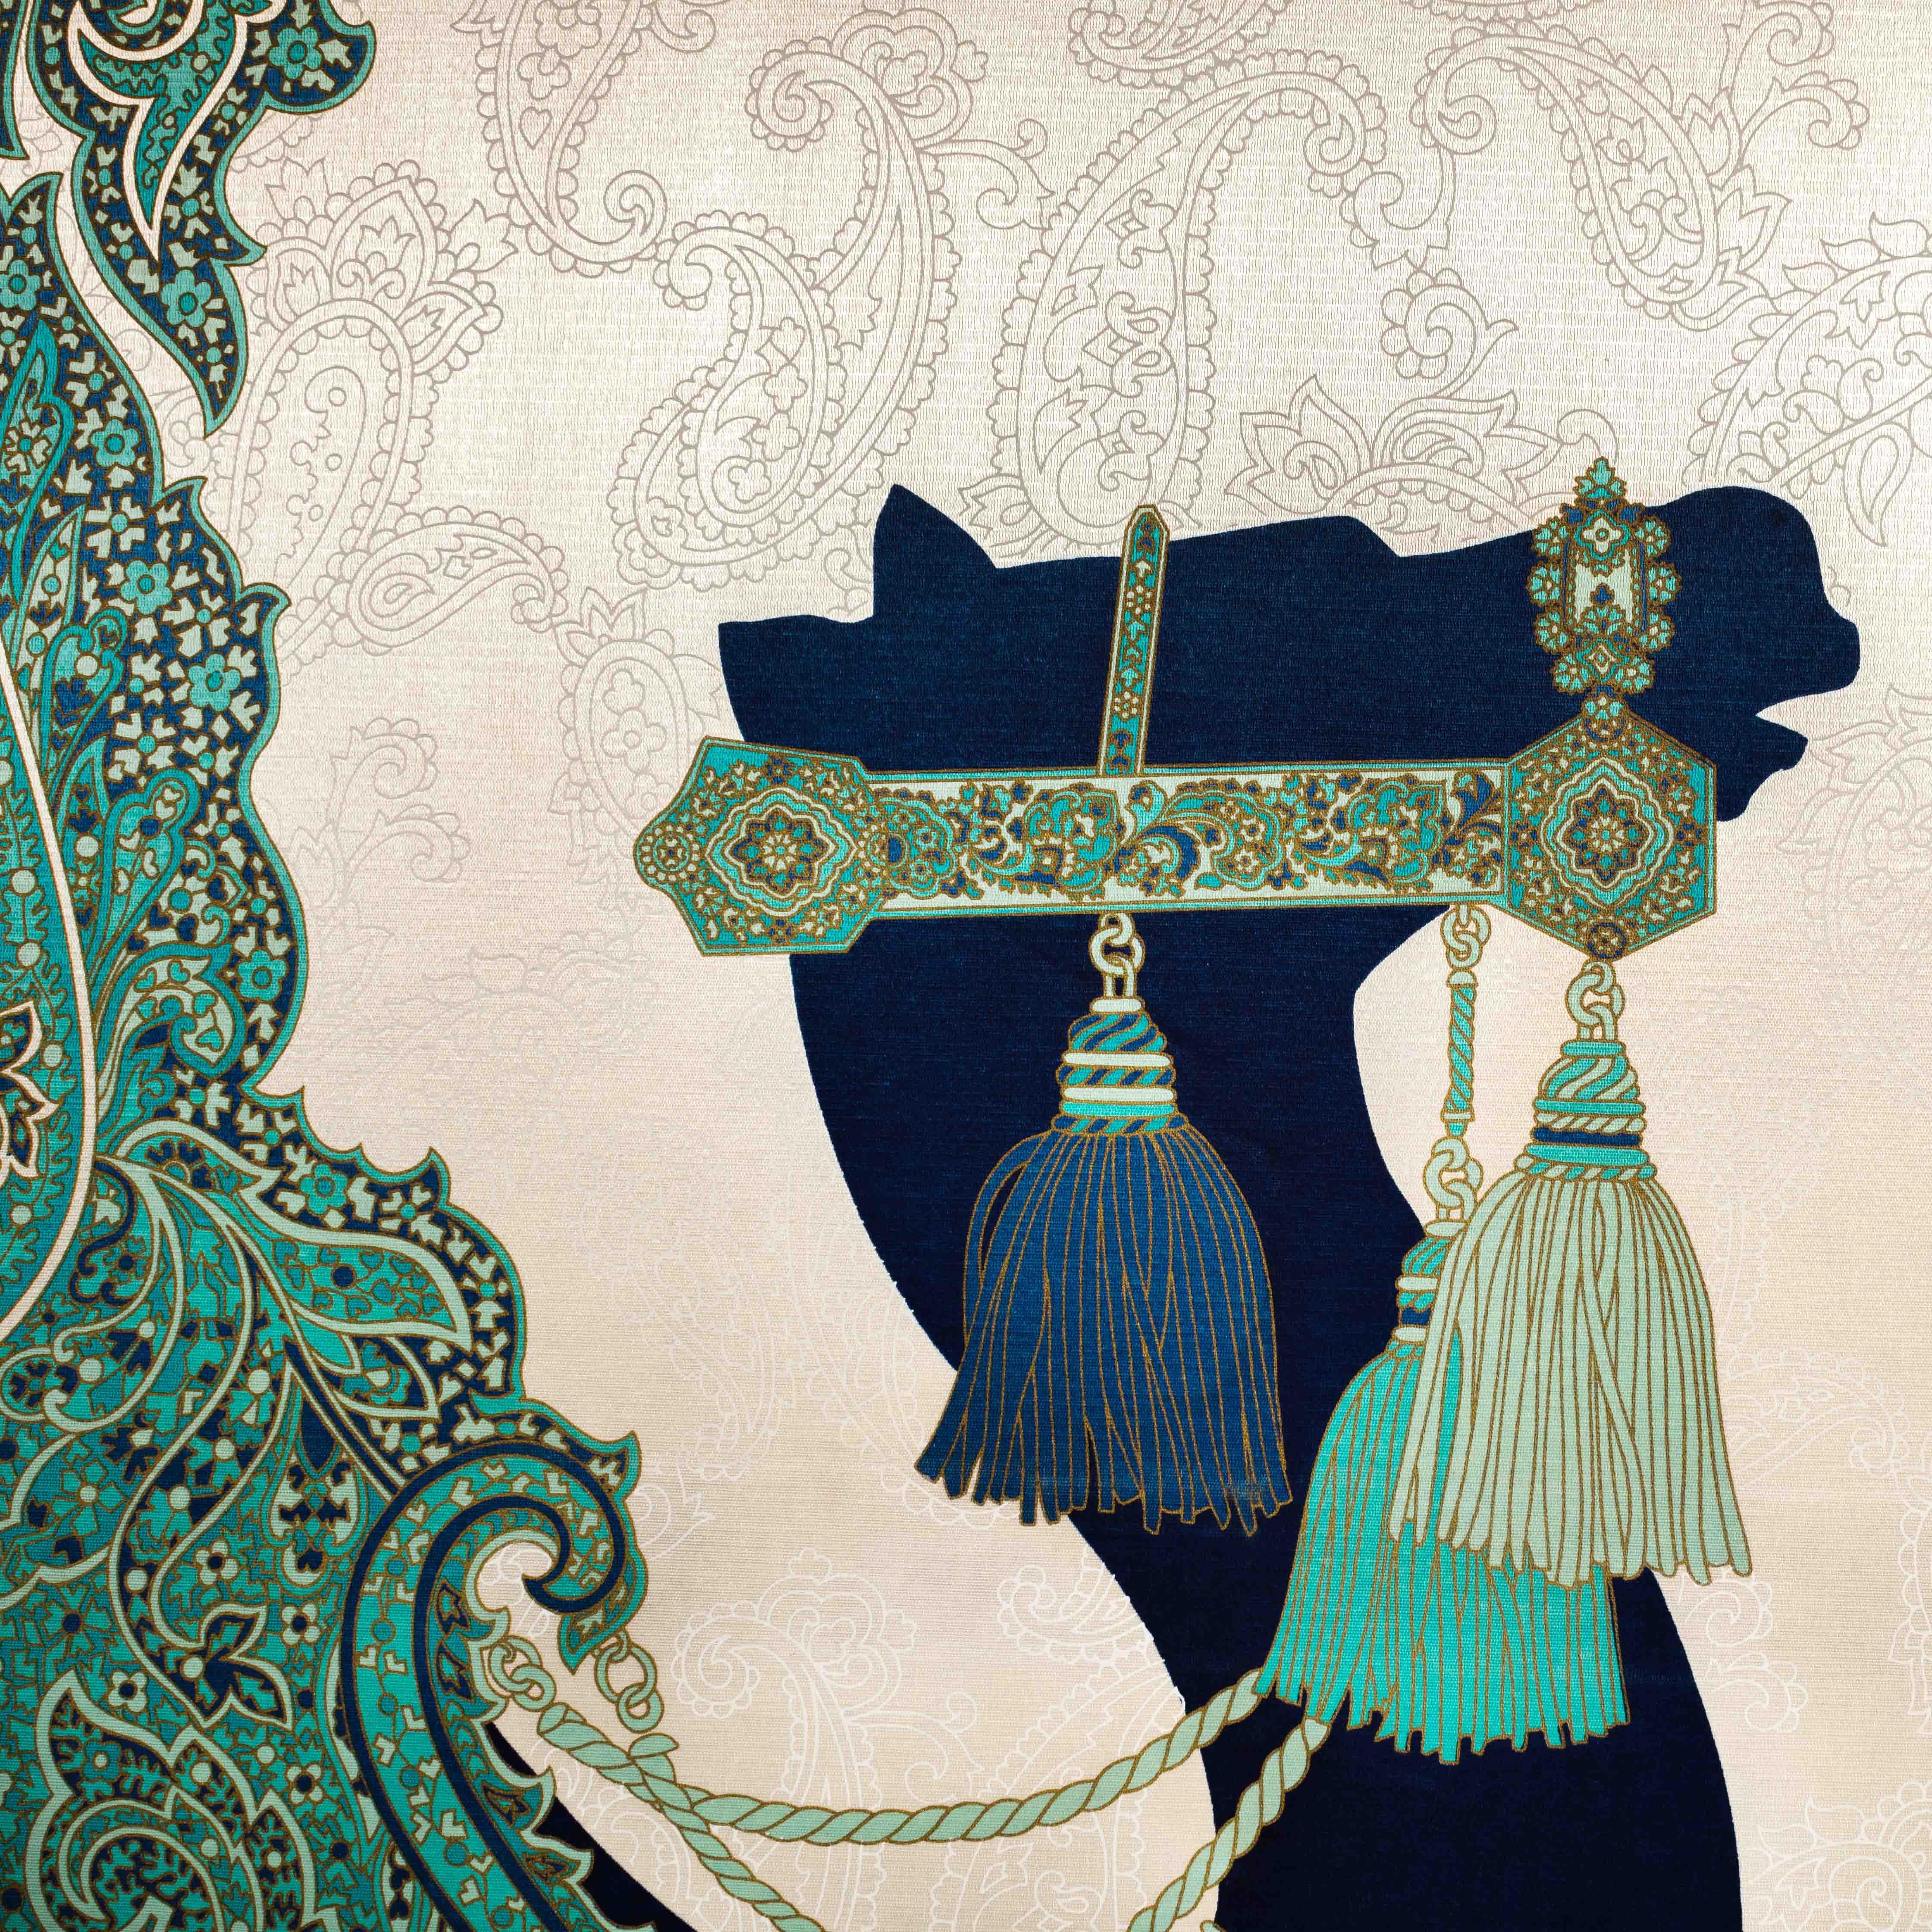 Gemälde eines stilisierten orientalischen Kamels von Fabbriziani und Calandra aus den 1970-er Jahren in Italien.
Auf Satin in einer Art Siebdruck in limitierter Auflage, Holzrahmen vergoldet.
Das schwarze Kamel ist in Bewegung und wirkt mit seiner